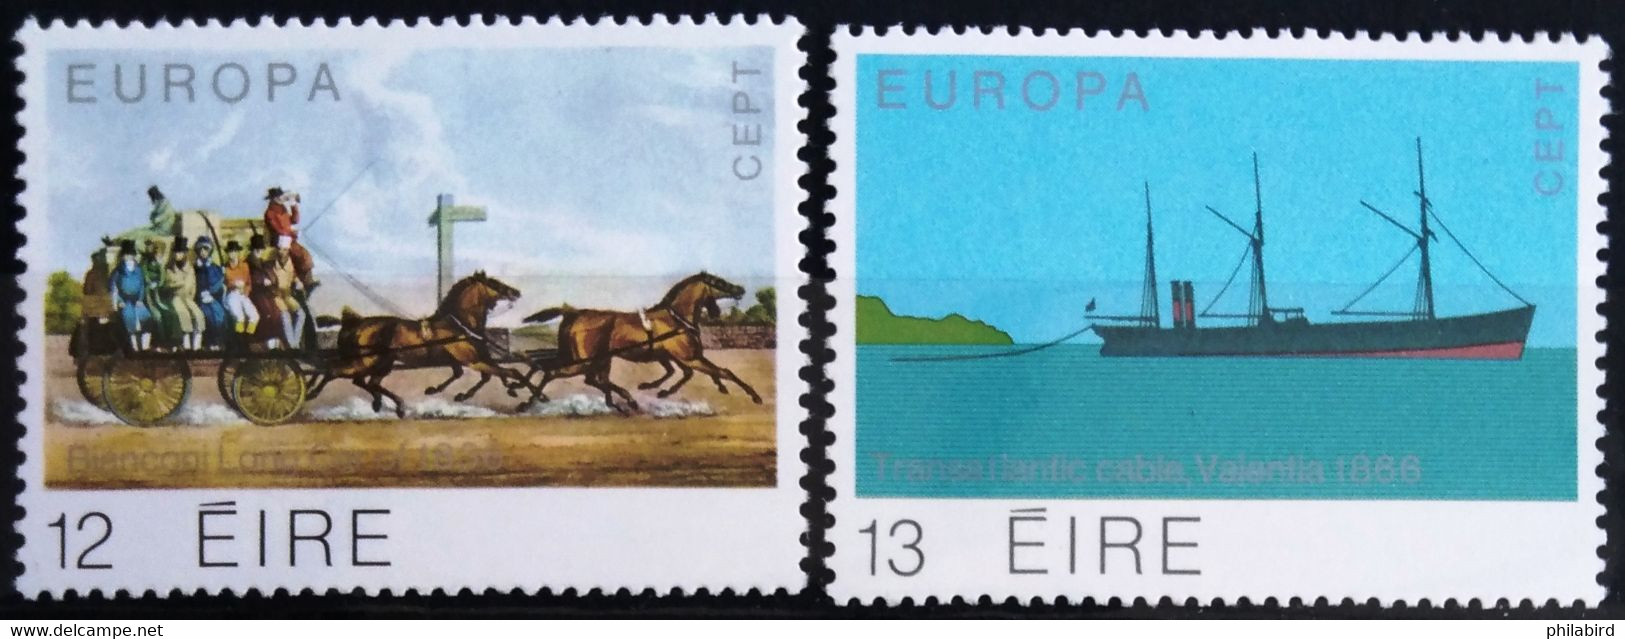 EUROPA 1979 - IRLANDE                 N° 415/416                     NEUF** - 1979